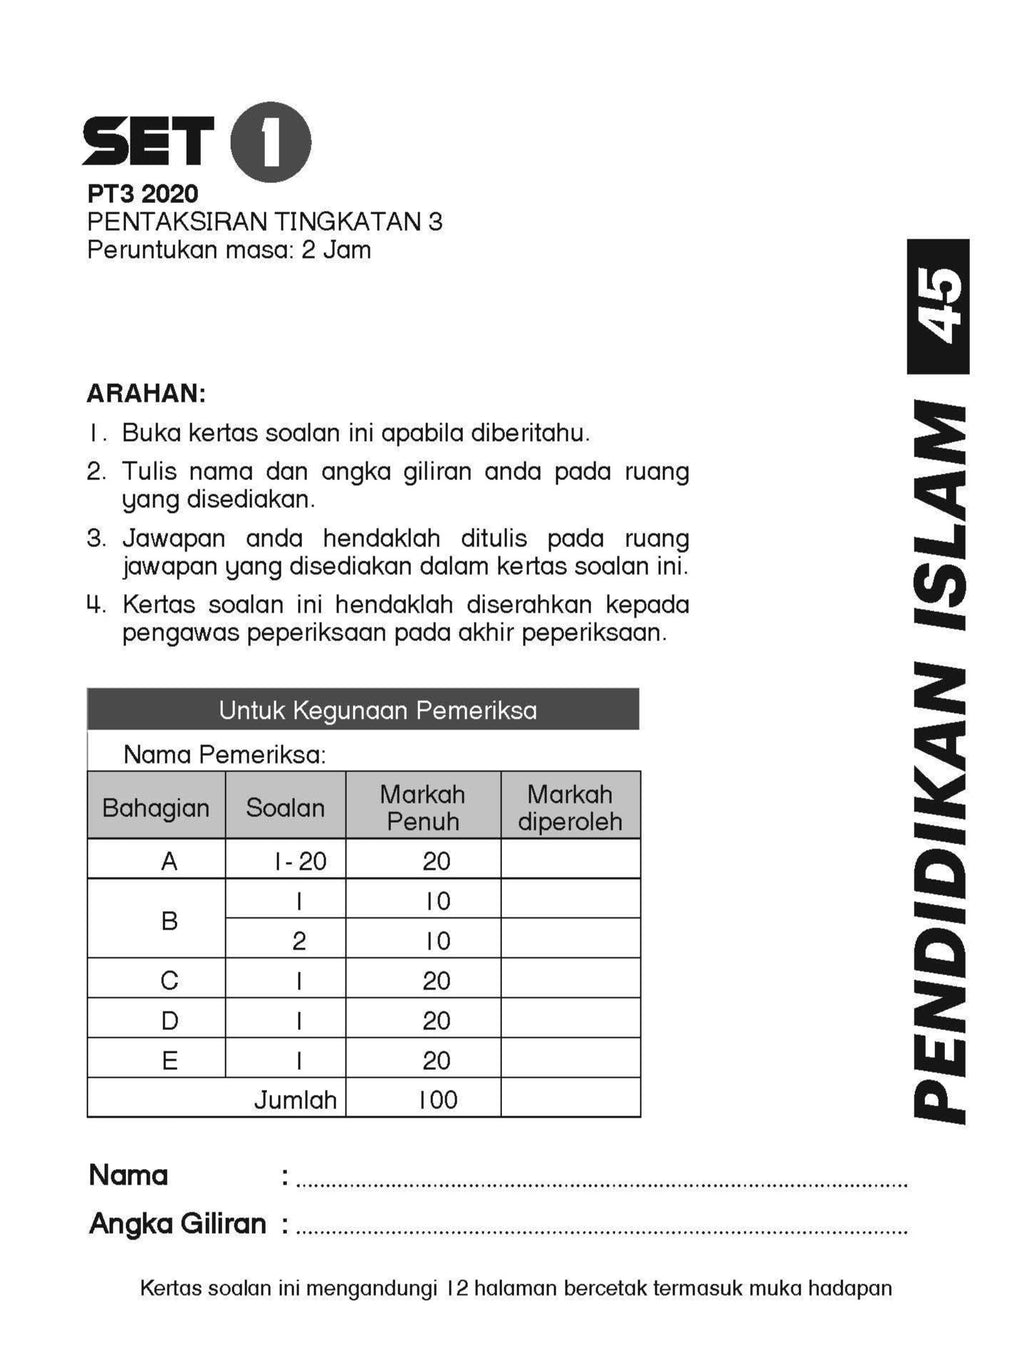 Get Smart Modul Soalan Pendidikan Islam Kssm Format Pt3 Tbbs1134 Telaga Biru Sdn Bhd